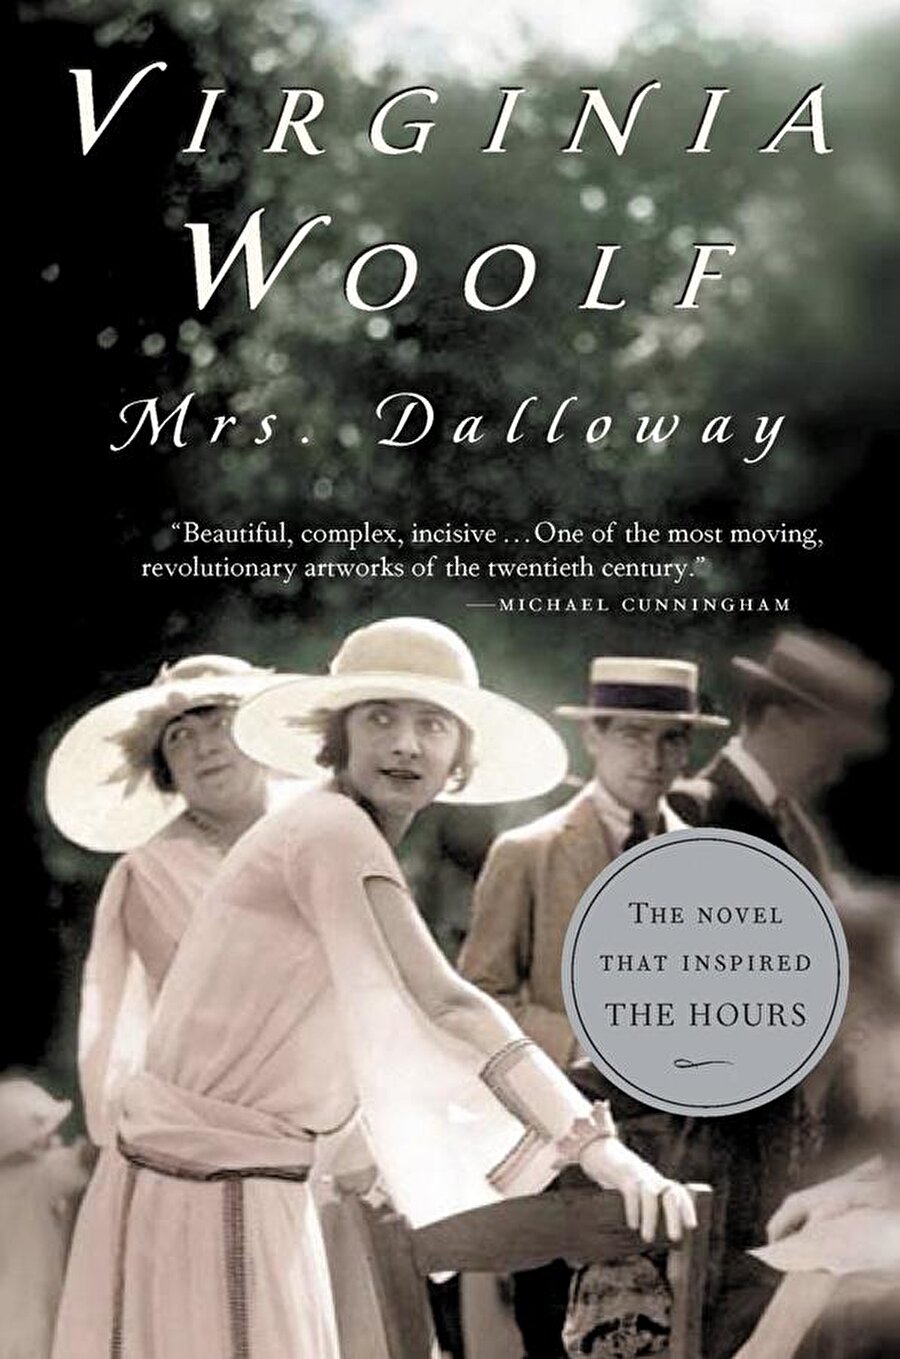 Vırgınıa Woolf-Bayan Dalloway

                                    Birinci Dünya Savaşı'nın sonunda Londra. Sıcak bir yaz günü Clarissa Dalloway o akşam vereceği büyük partiye hazırlanmaktadır. Aynı gün Hindistan'dan beklenmedik bir ziyaretçi gelir: İlk aşkı Peter Walsh. Onun bu apansız gelişi uzak bir geçmişin anılarını, eski arkadaşlıkları ve Clarissa'nın gençliğinde yaptığı tercihleri canlandırır zihninde. Bütün yaşamı, ilişkileri ve sıradan, tekdüze evliliğine götüren olaylar bir bir geçer gözlerinin önünden.

Clarissa çevresinde sürüp giden hayata ve o hayatın içindeki sayısız insana odaklanırken, yazar da çeşitli karakterler arasında gidip gelir ve onların yaşadıklarını Mrs. Dalloway'in akıp giden gününün içine yerleştirir. Virginia Woolf, 'Clarissa Dalloway'in hayatında bir gün' ü, en yetkin temsilcisi olduğu bilinçakışı tekniğiyle anlattığı bu romanında, erkekle kadın ve iki kadın arasındaki ilişkilere de bir pencere açıyor; karakterlerin her birinin iç dünyasına okuru da dahil ediyor; geçmişe ait benzersiz ama acı veren imgeleri bugünün imgelerine katıyor, toplumun dayattıklarının altında boğulan arzuları incelikle işliyor. Hayatı ve dış dünyayı her bir karakterinin gözünden ve zihninden muhteşem bir çözümlemeyle sunarken, zamanının ruhunu da başarıyla yansıtıyor.
                                